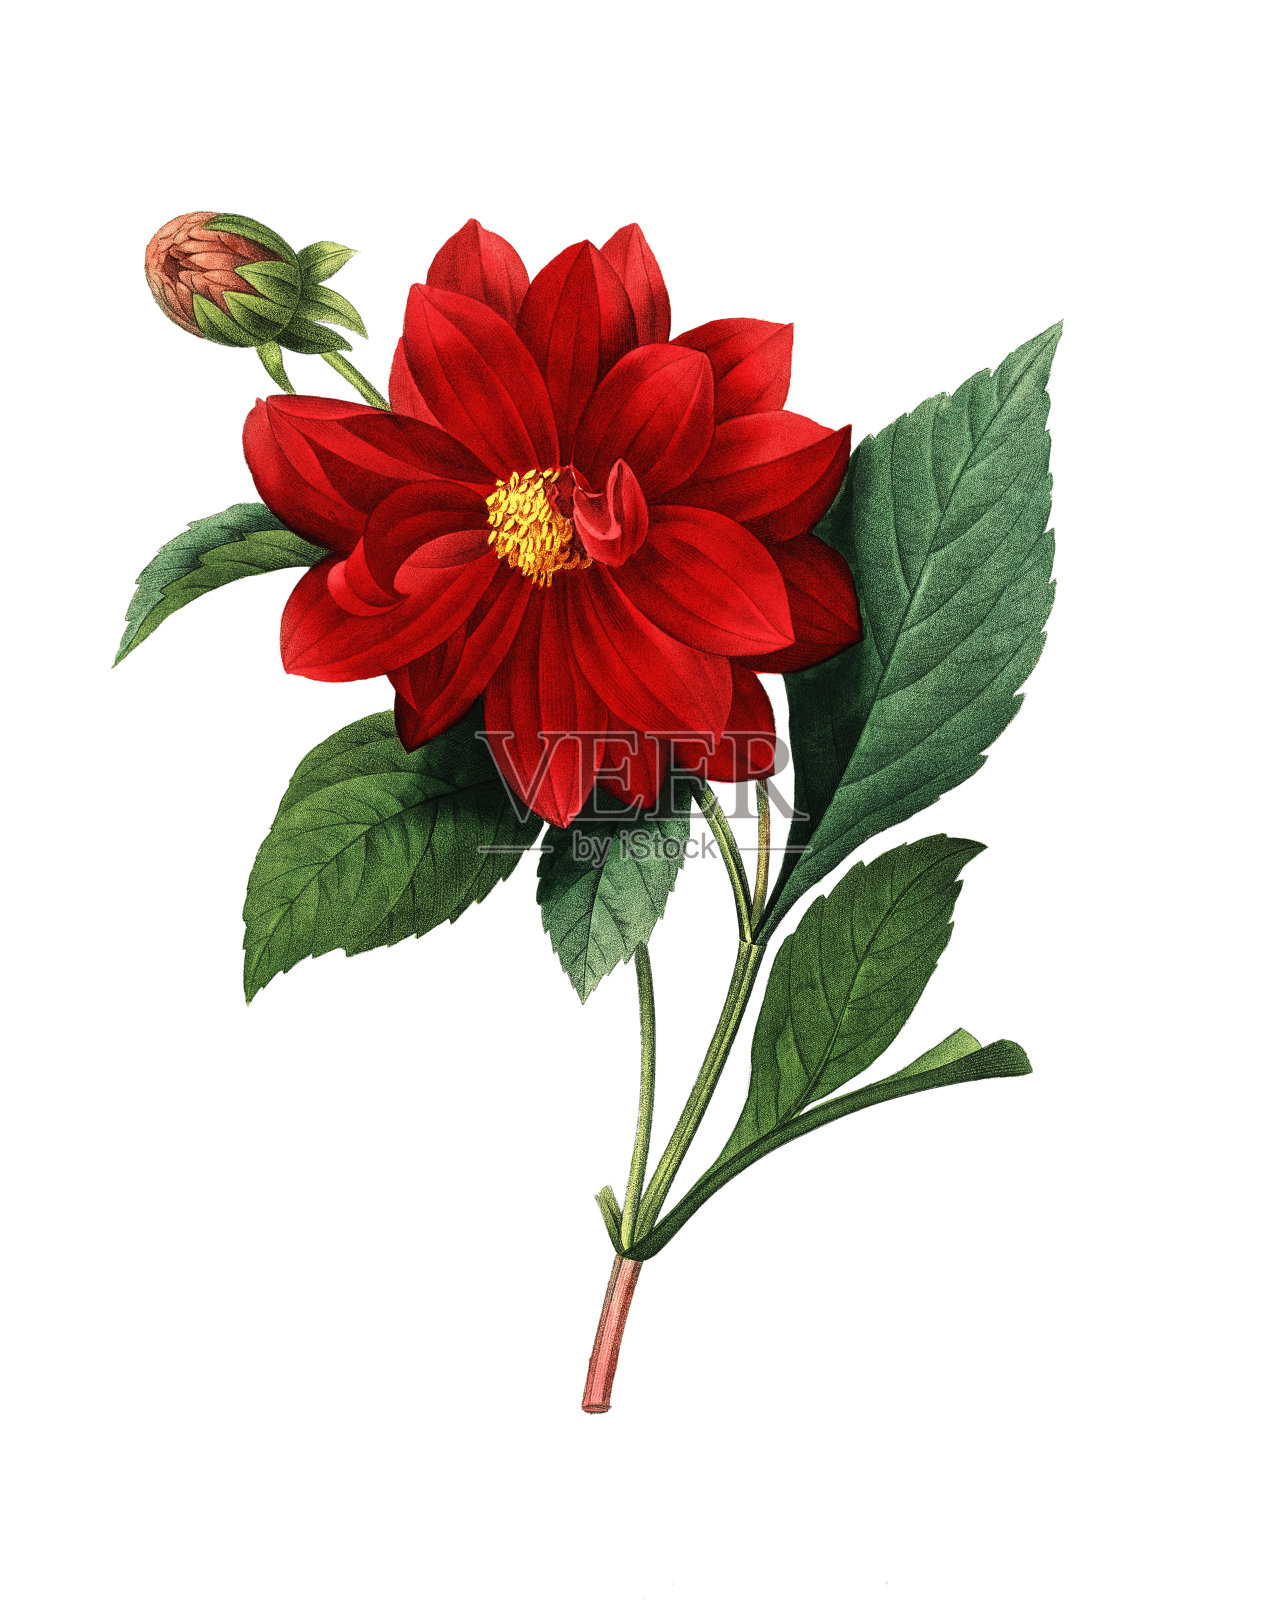 达利亚双| Redoute花卉插图插画图片素材